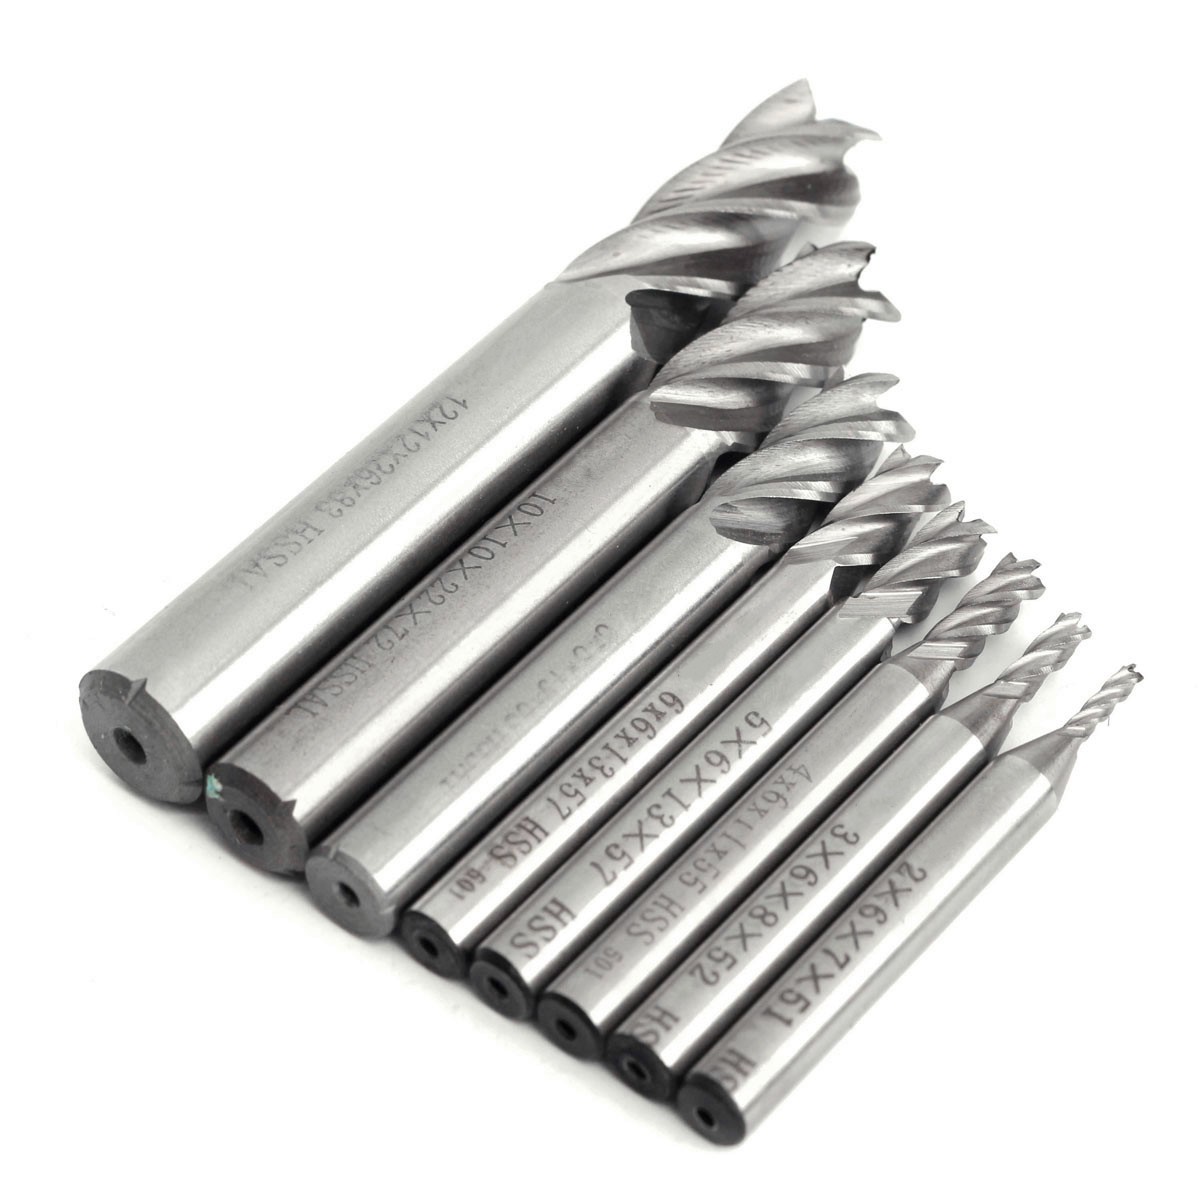 2-12mm-HSS-4-Flute-End-Mill-Cutter-Straight-Shank-Milling-Cutter-Drill-Bit-CNC-Tool-1116645-7